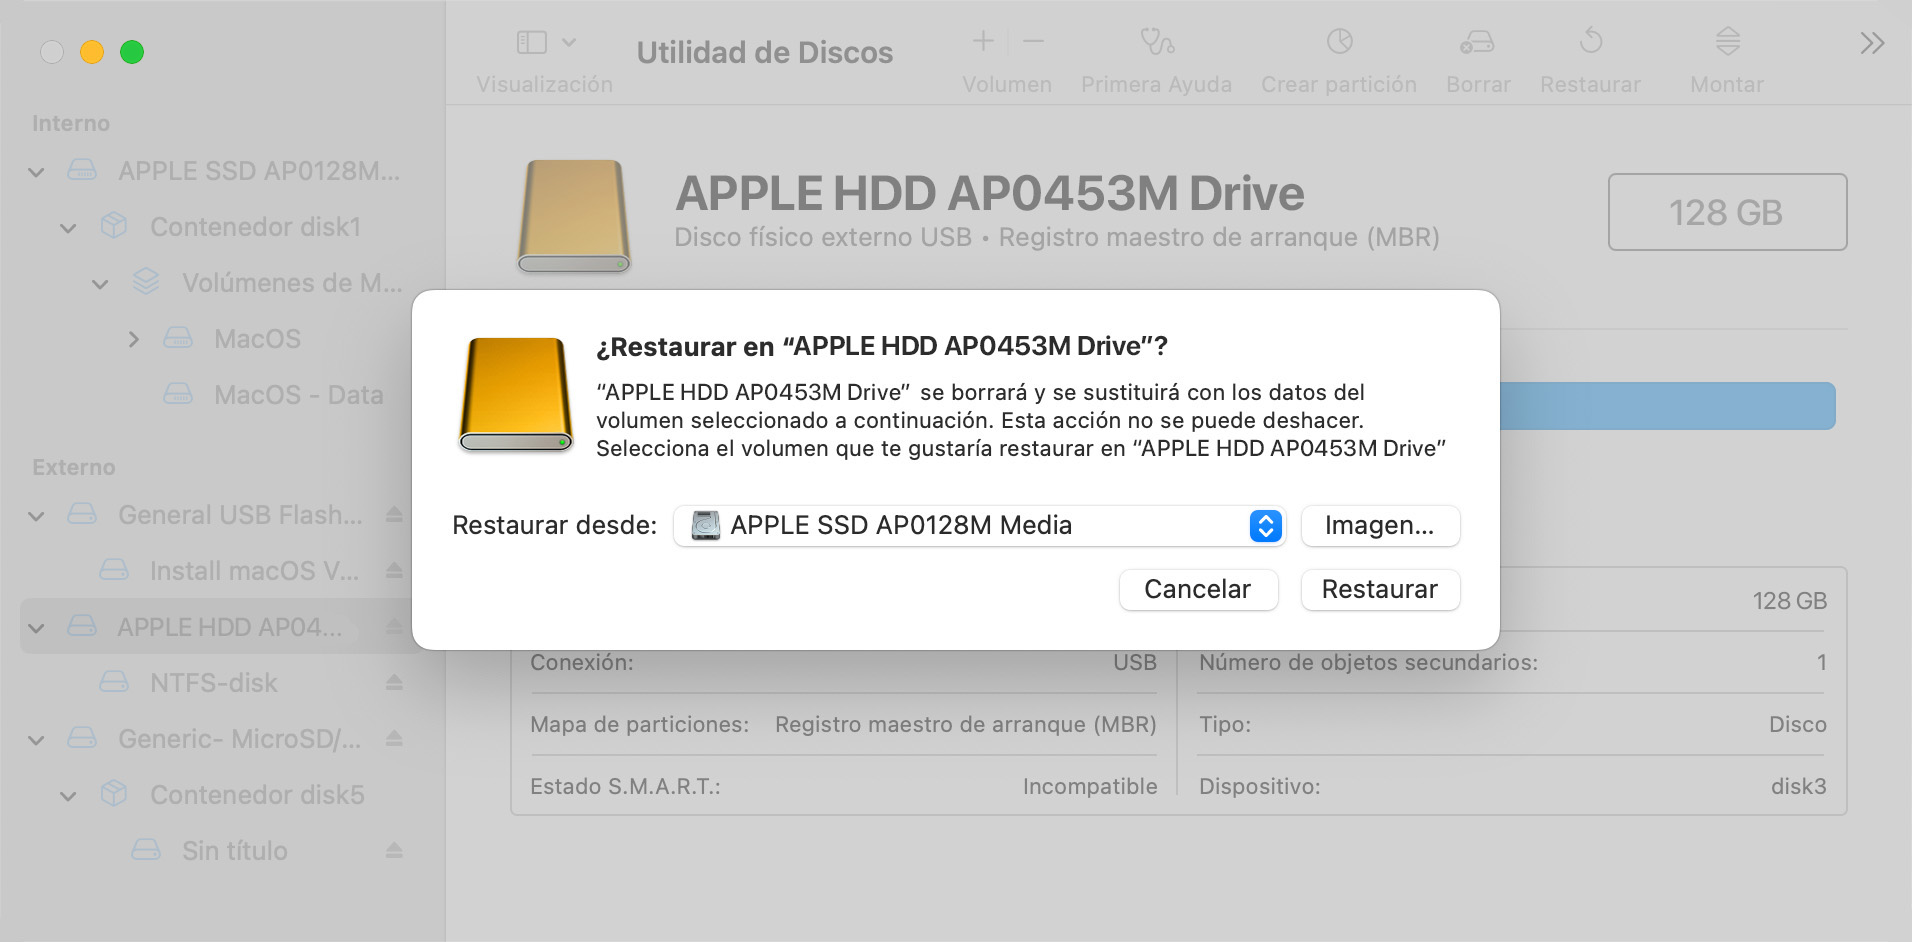 Recuperar un disco utilizando la Utilidad de Discos en tu Mac